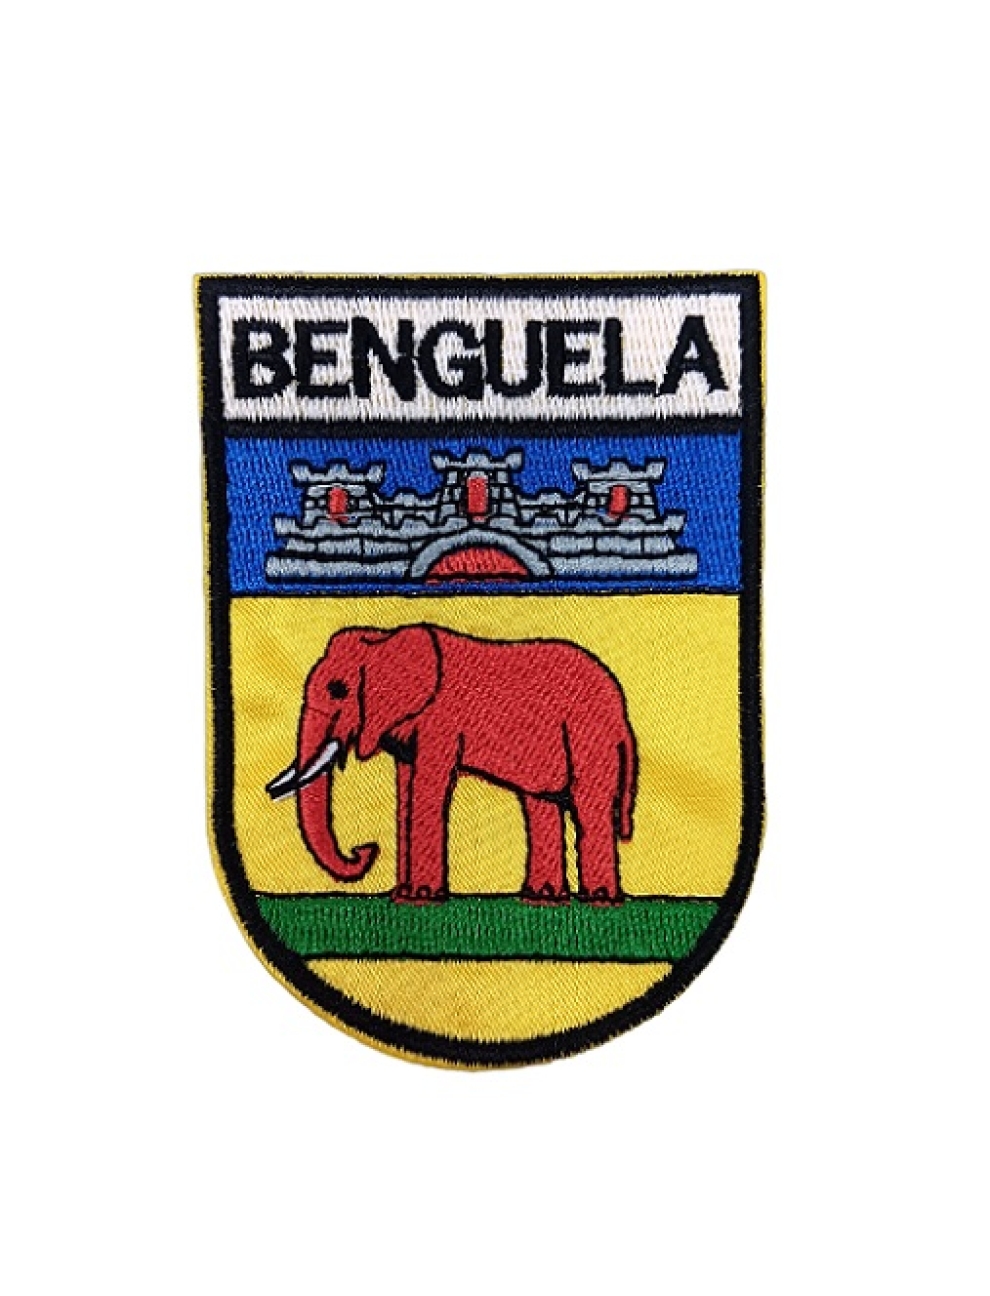 Angola - Benguela